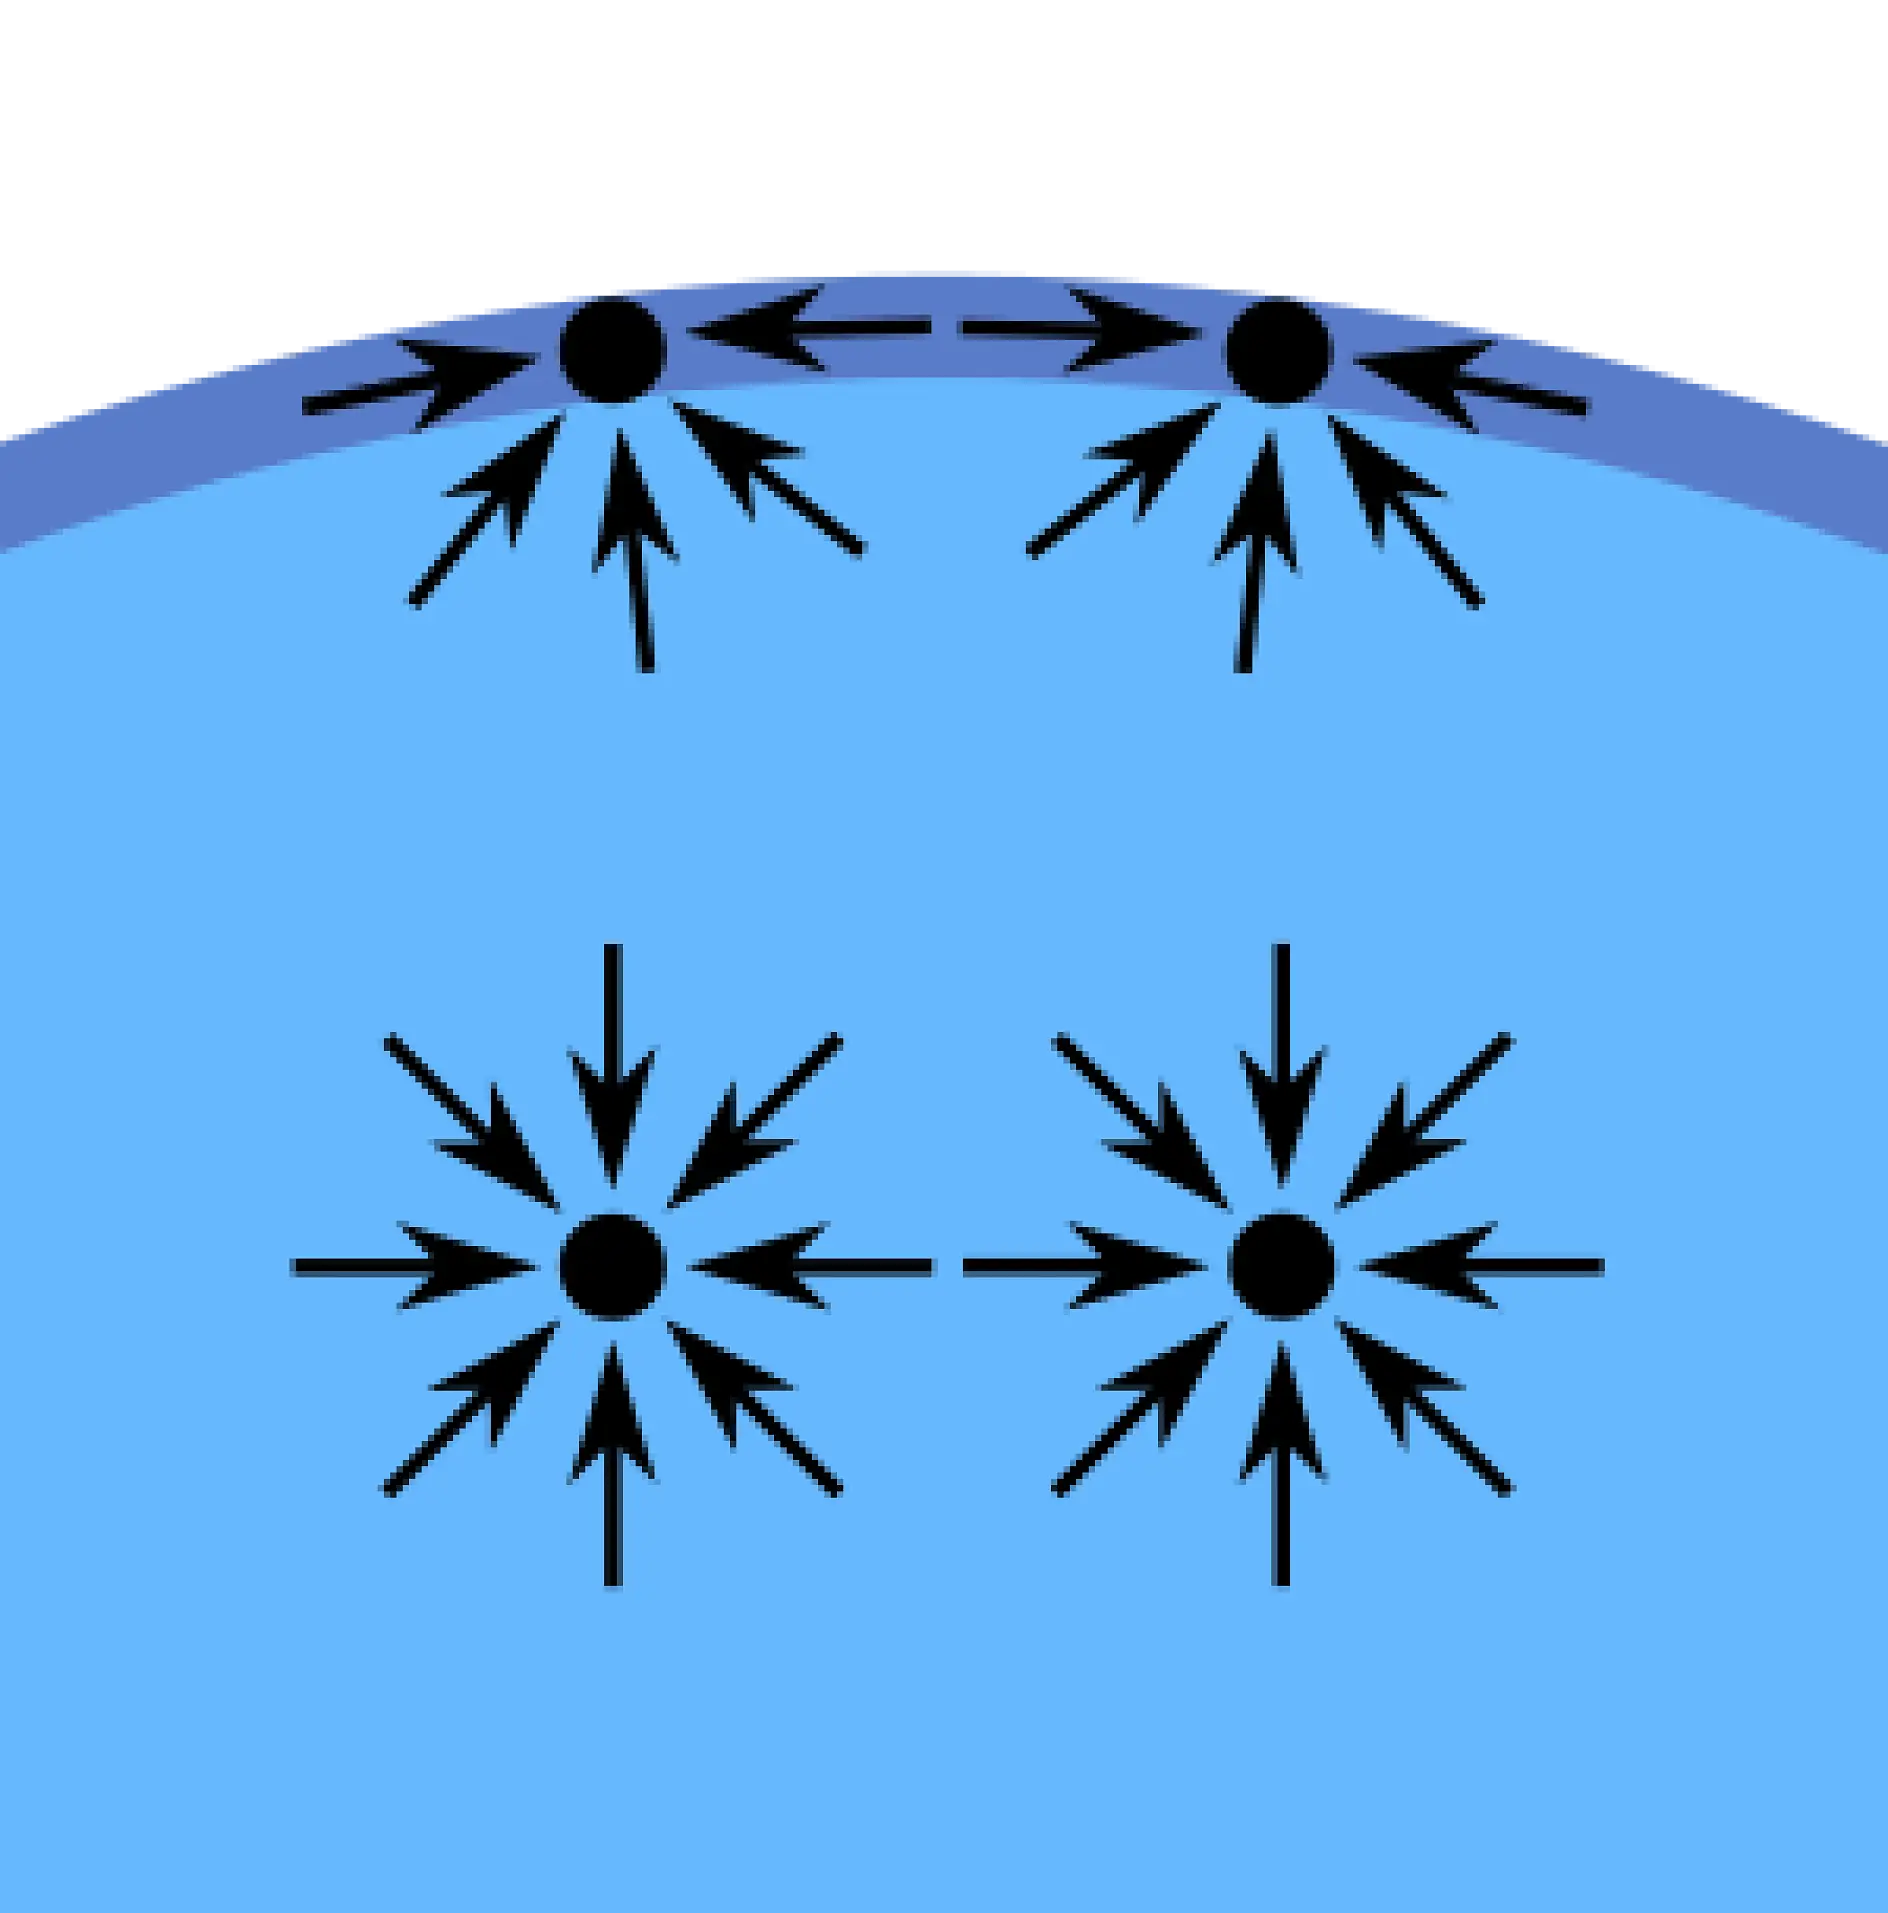 Le forze di coesione - ovvero l'attrazione (interna) - tra le molecole liquide creano un fenomeno denominato "tensione superficiale". Le molecole sulla superficie di un bicchiere d'acqua per esempio non hanno altre molecole d'acqua su tutti i lati del bicchiere. Esse vengono attratte verso l'interno dell'acqua, hanno una maggiore coesione verso le molecole di acqua vicino o sotto di esse. Questa attrazione è maggiore rispetto a quella delle molecole d'aria soprastanti. Alla fine questa forza interna crea la superficie che separa l'acqua e l'aria.